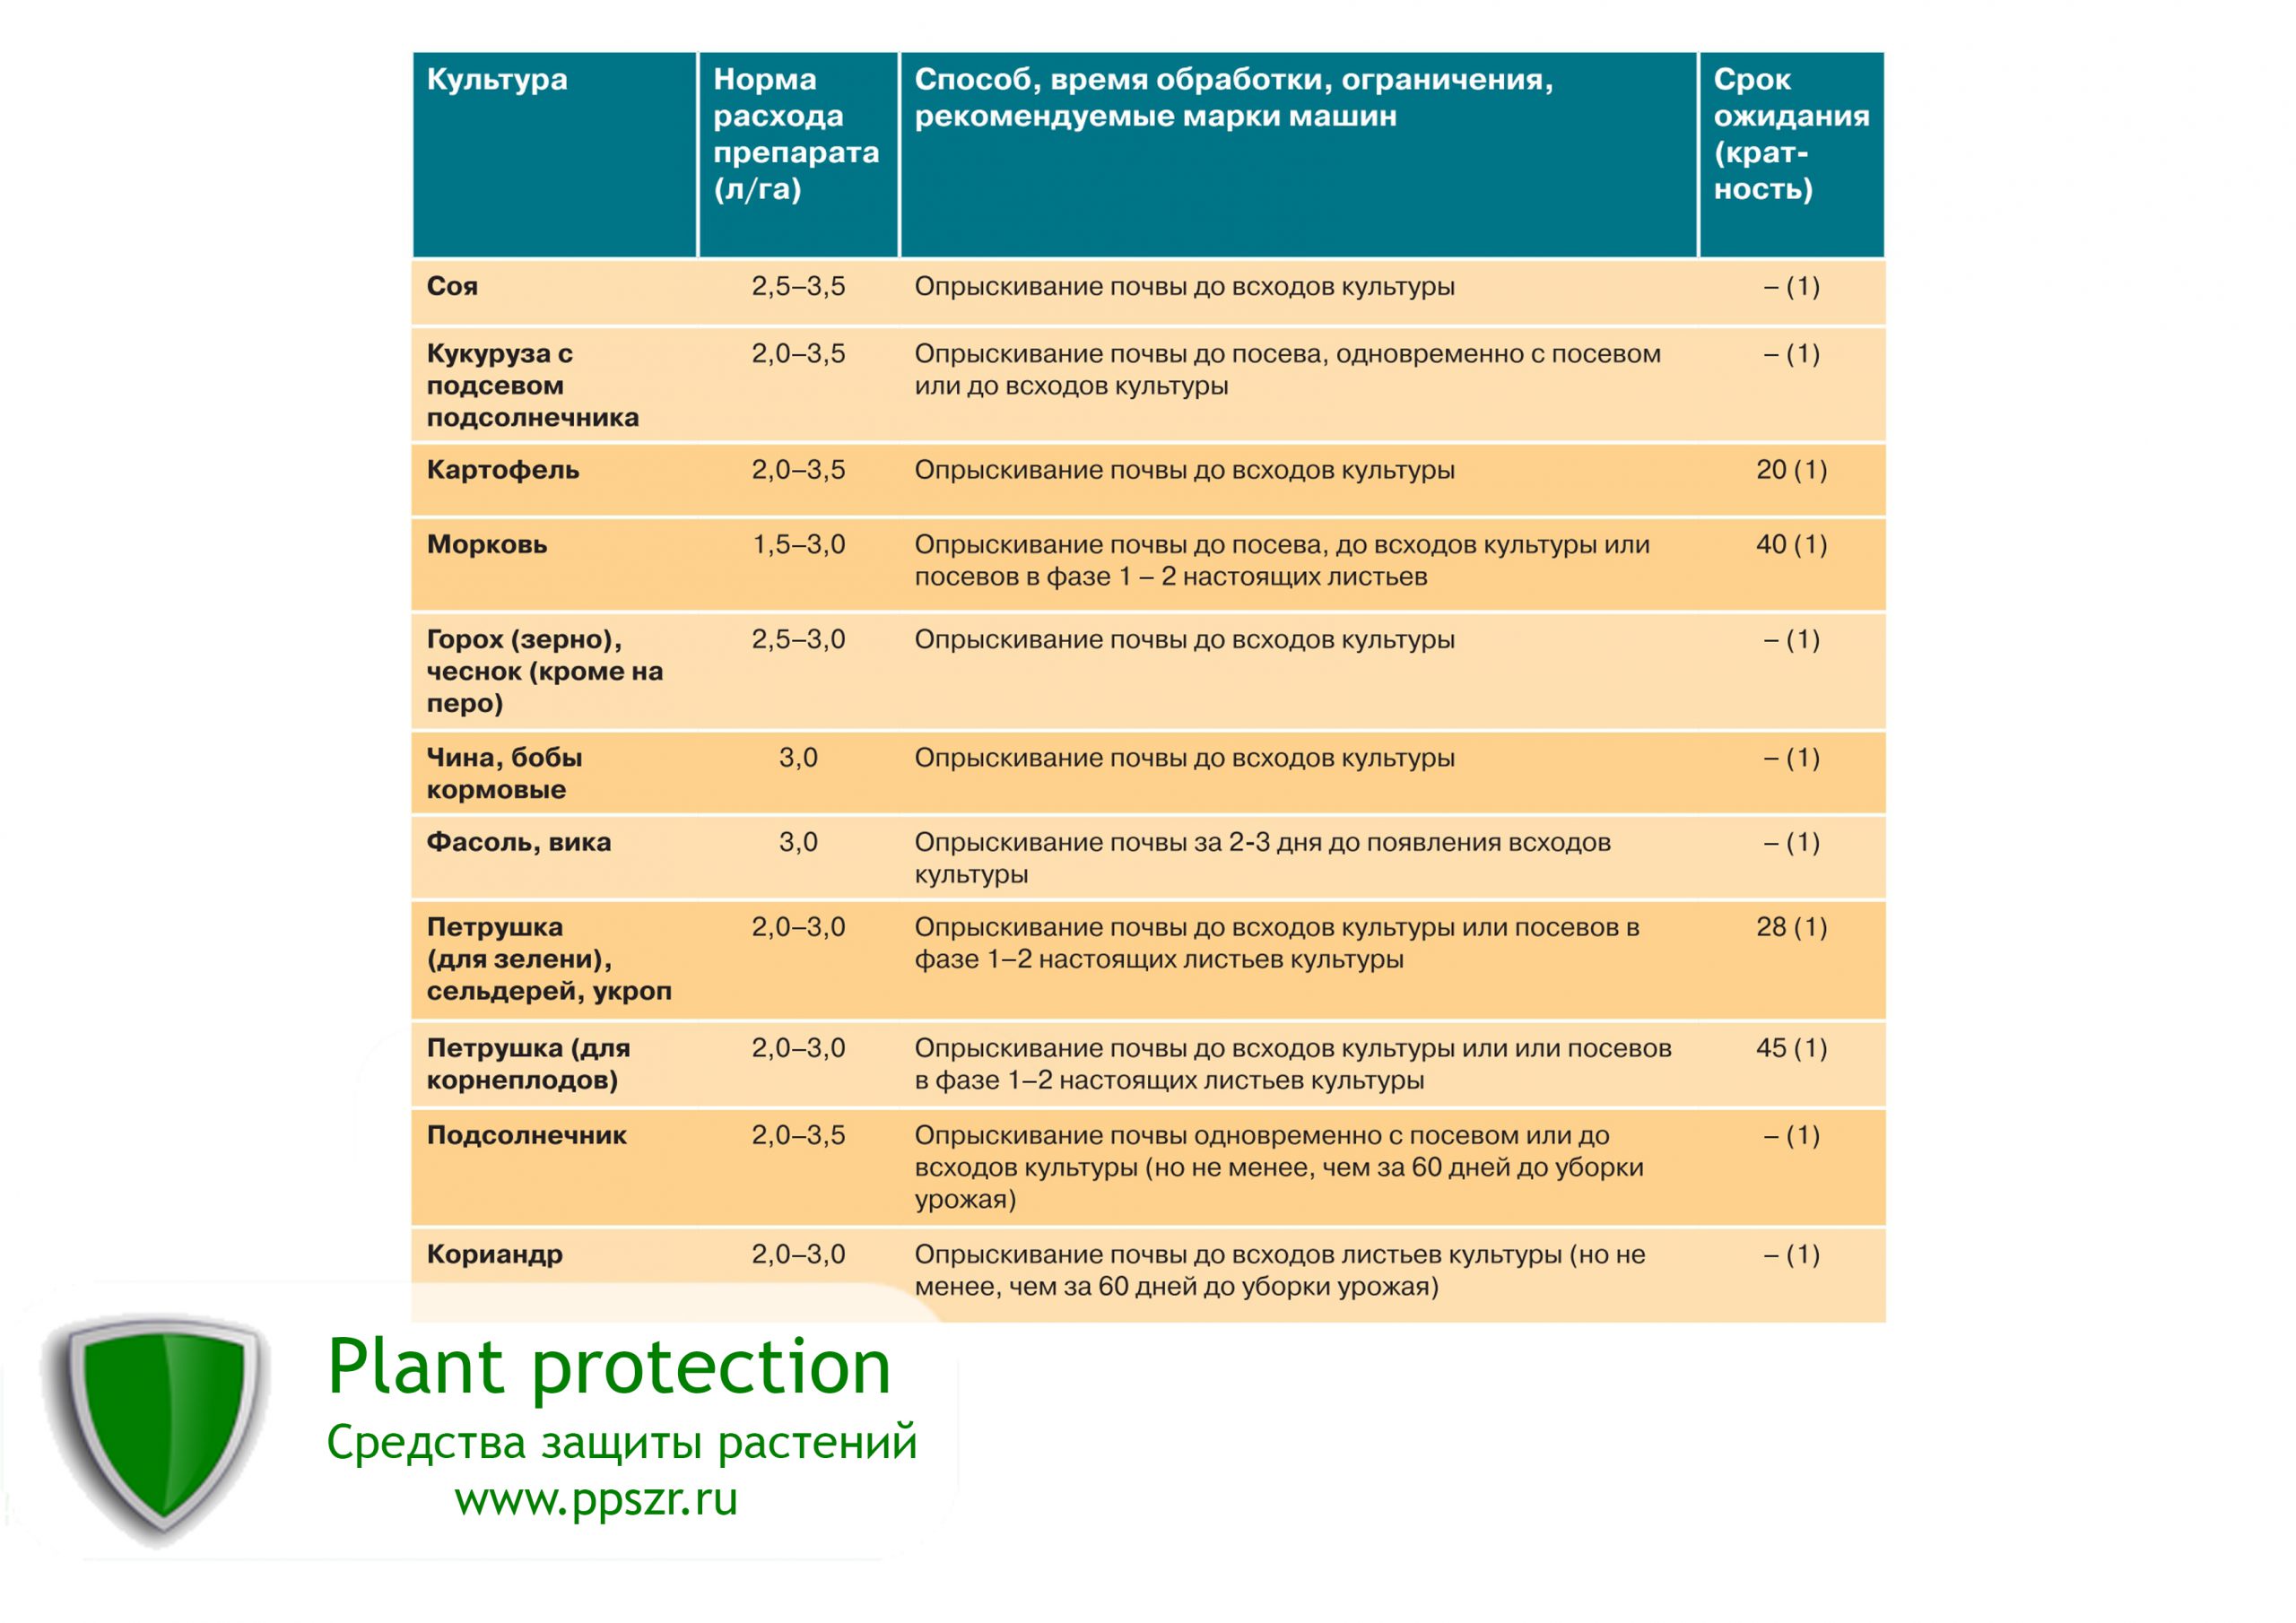 Почвенные гербициды - особенности применения и эффективность